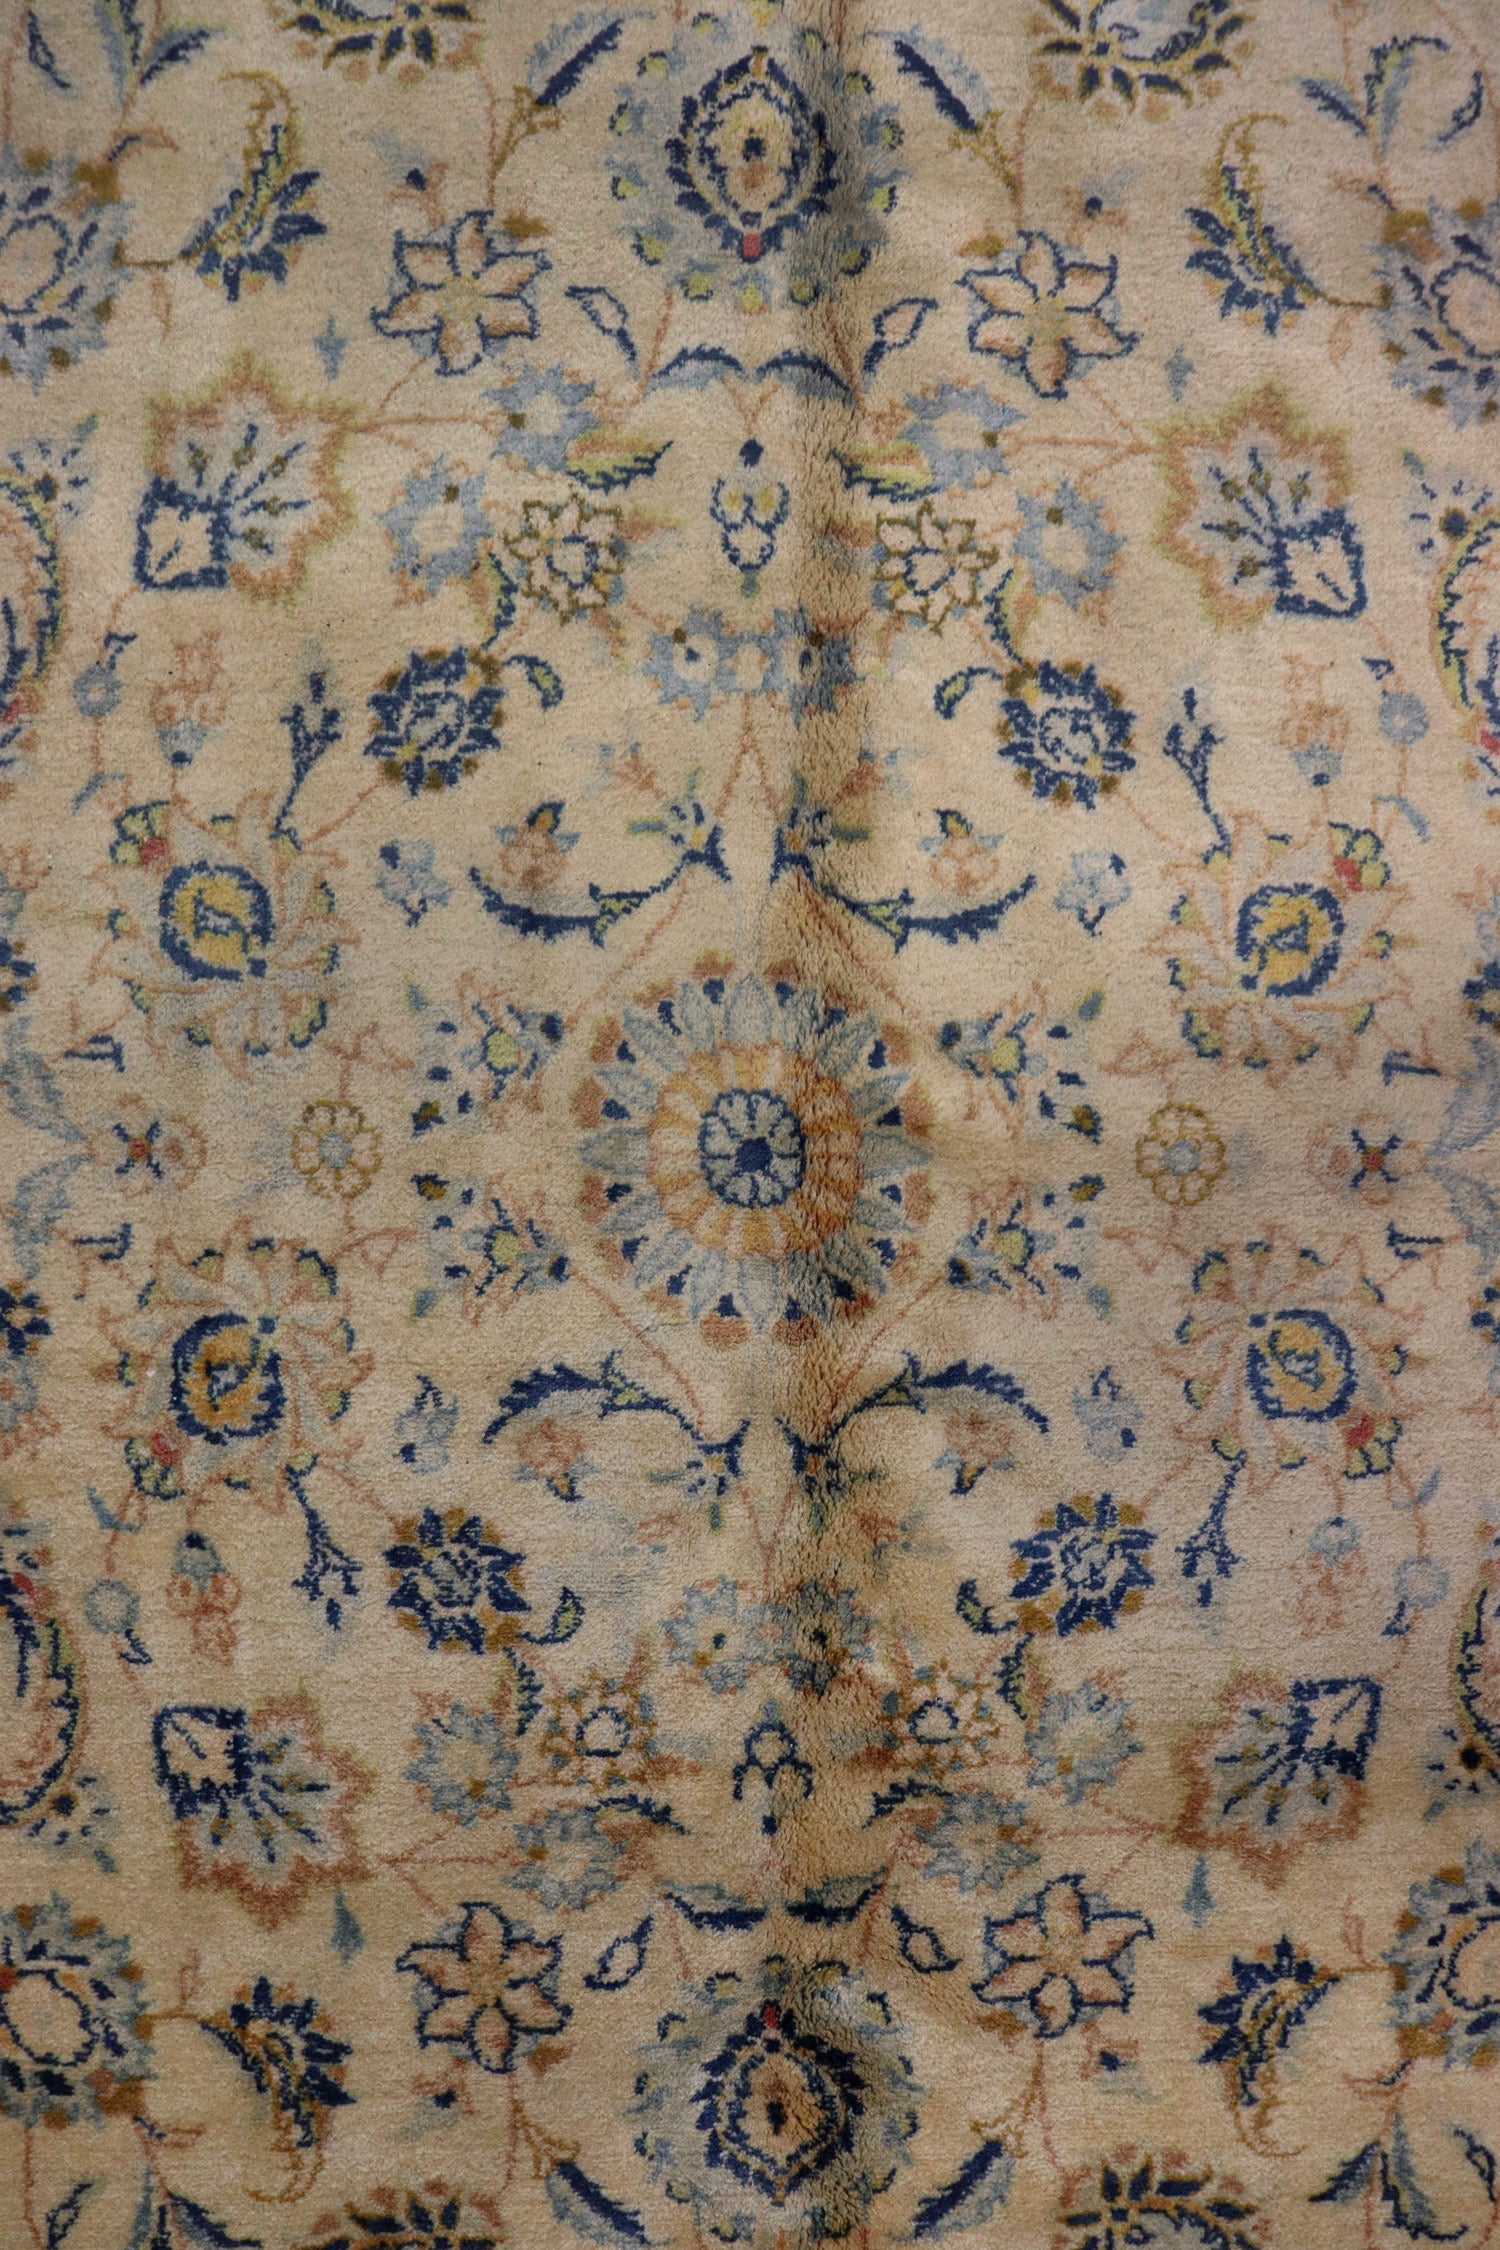 Antique Kashan Handwoven Traditional Rug, J65489